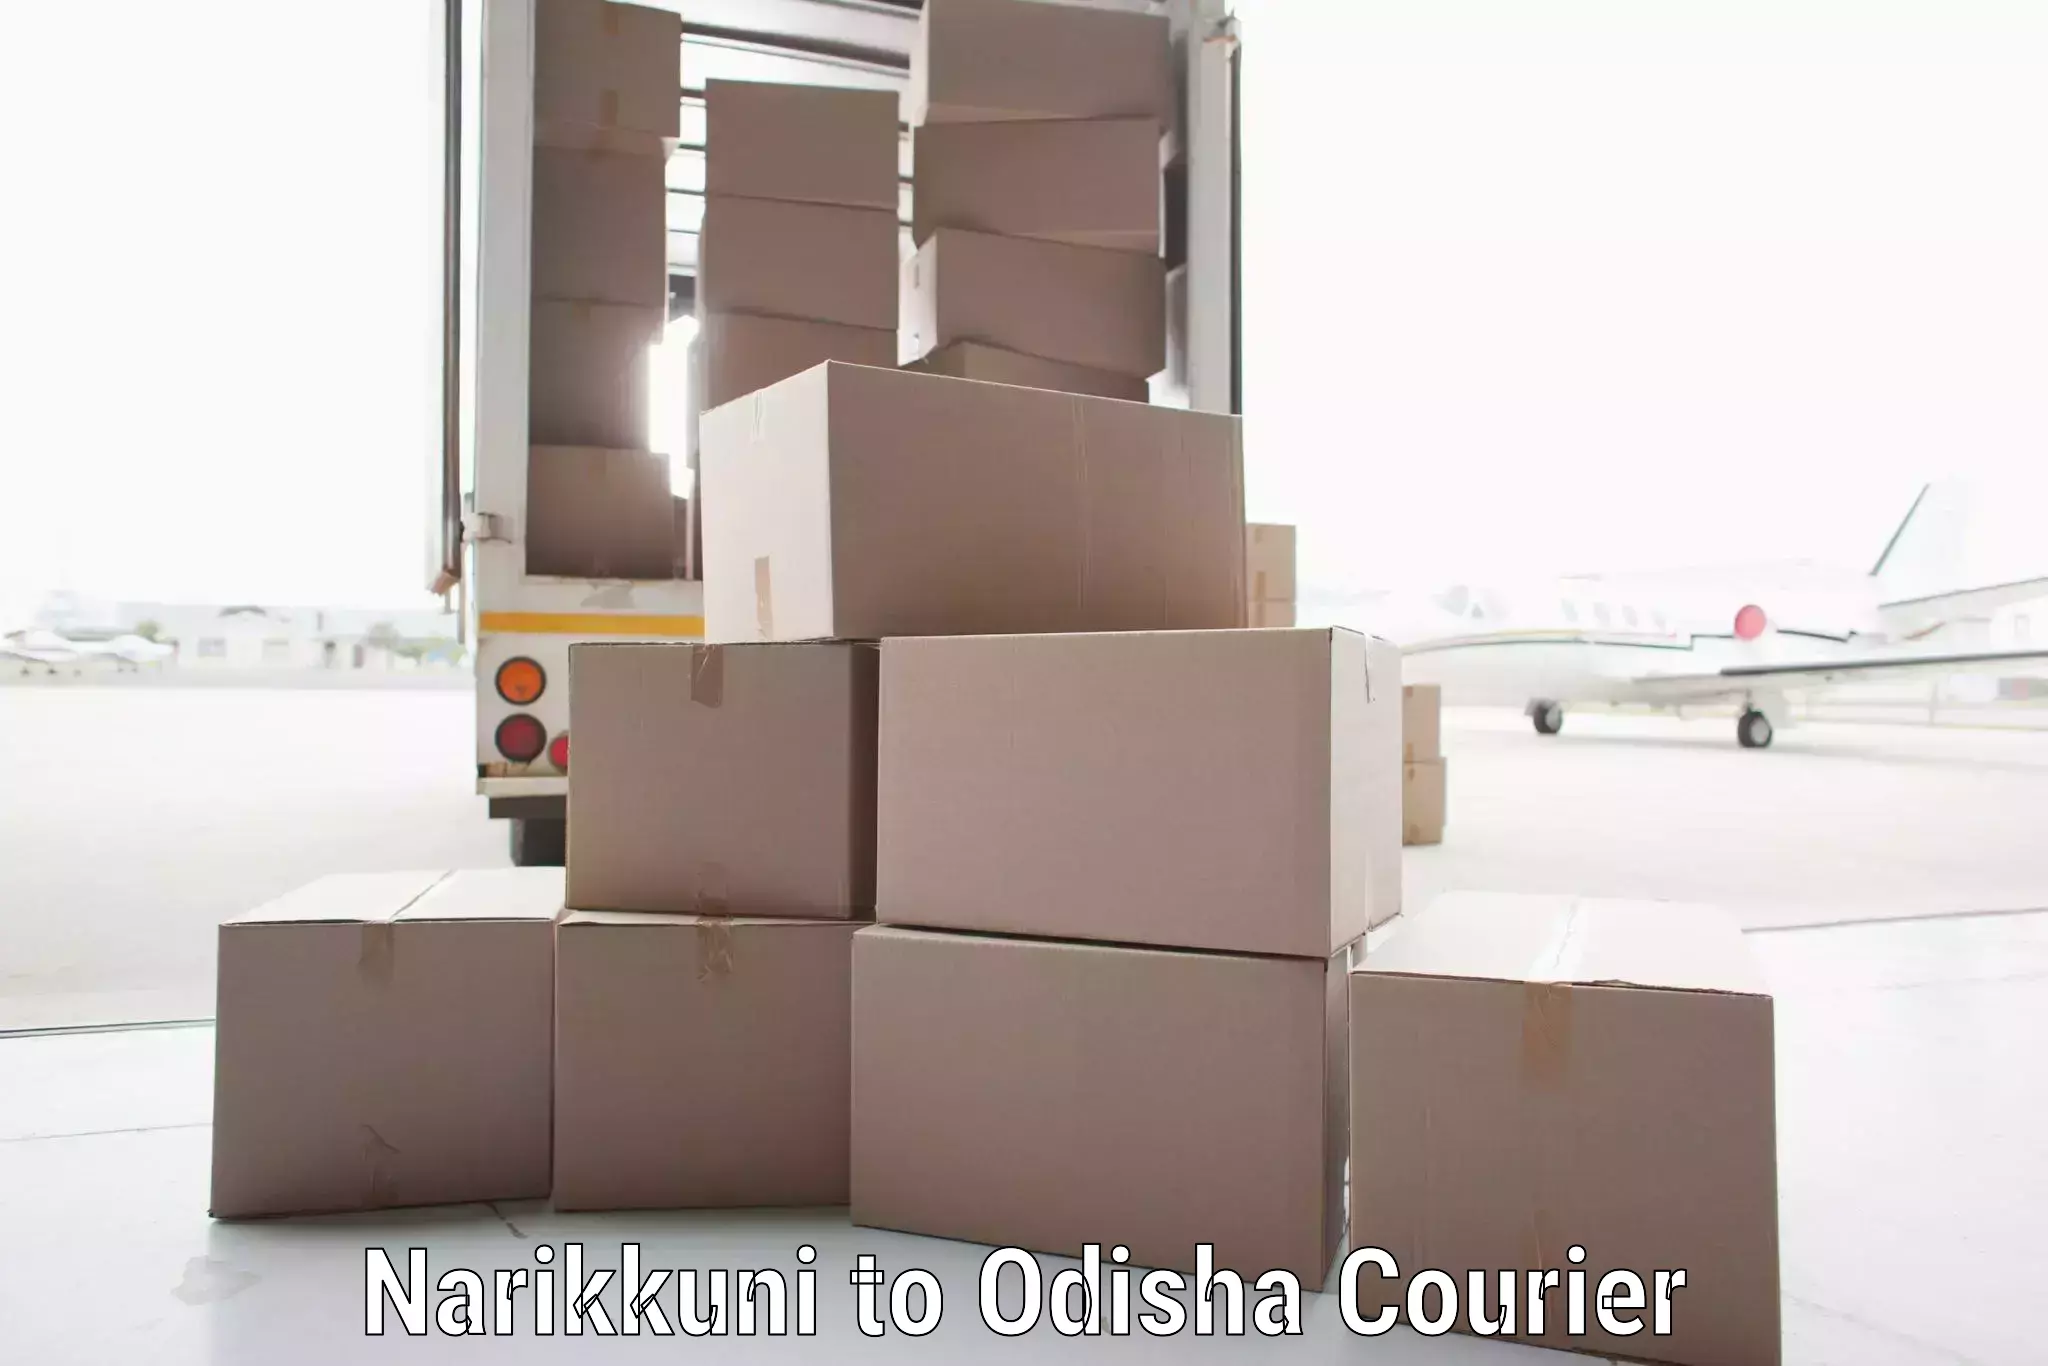 Advanced shipping technology Narikkuni to Asika